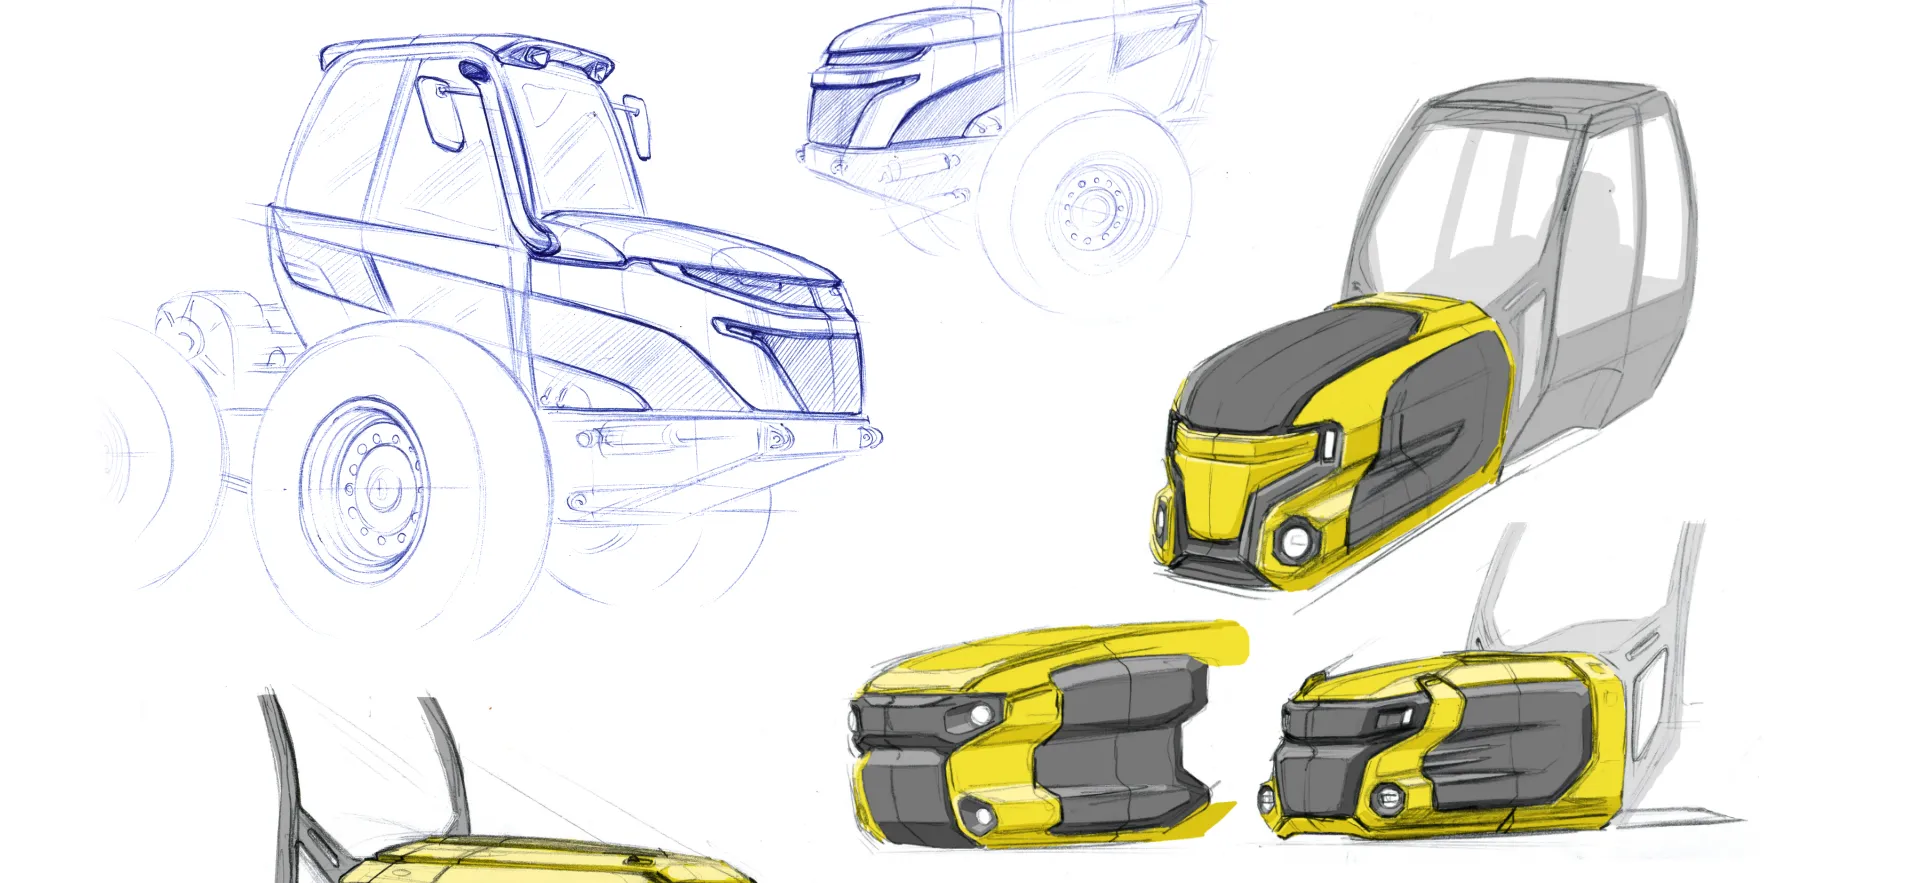 Tractor Concept 05_Design by Werkemotion